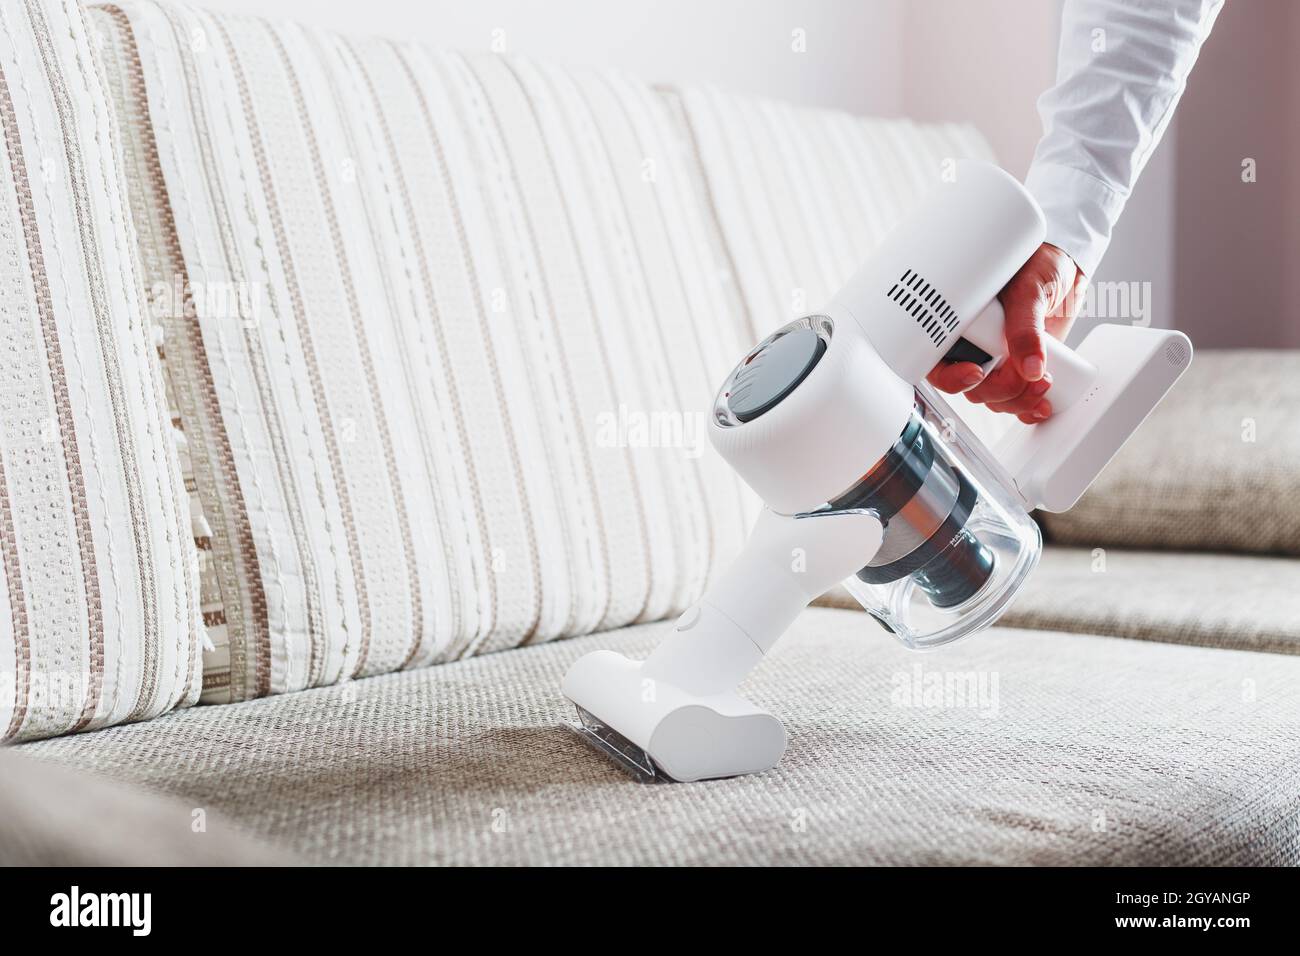 Une personne utilise un aspirateur sans fil blanc pour nettoyer le canapé  du salon Photo Stock - Alamy